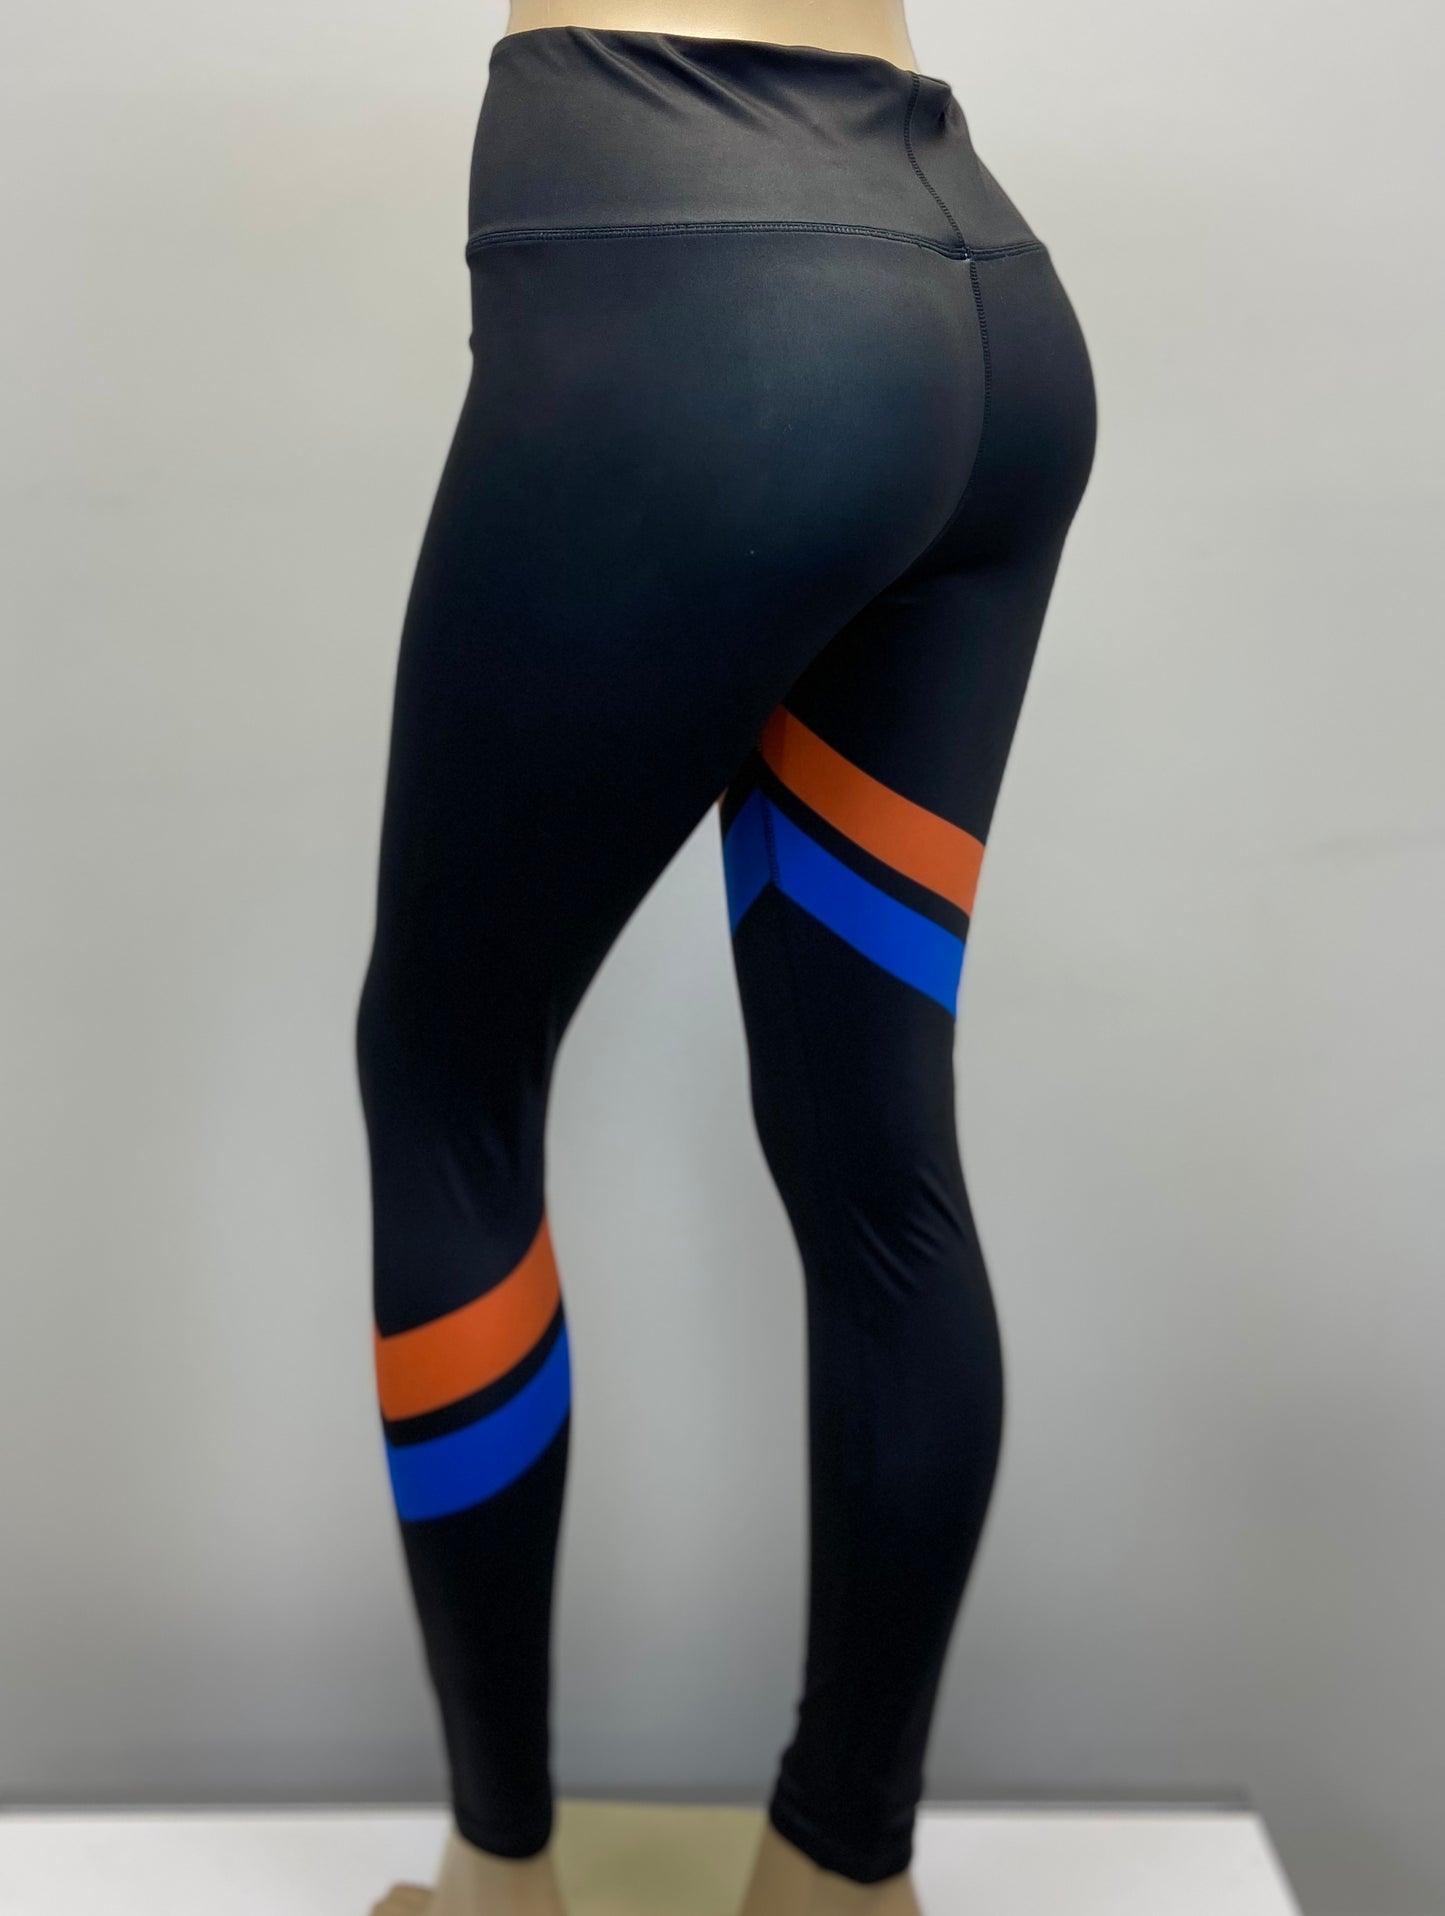 IAMELITE® Official IAE Women Athletic Leggings / Yoga pants